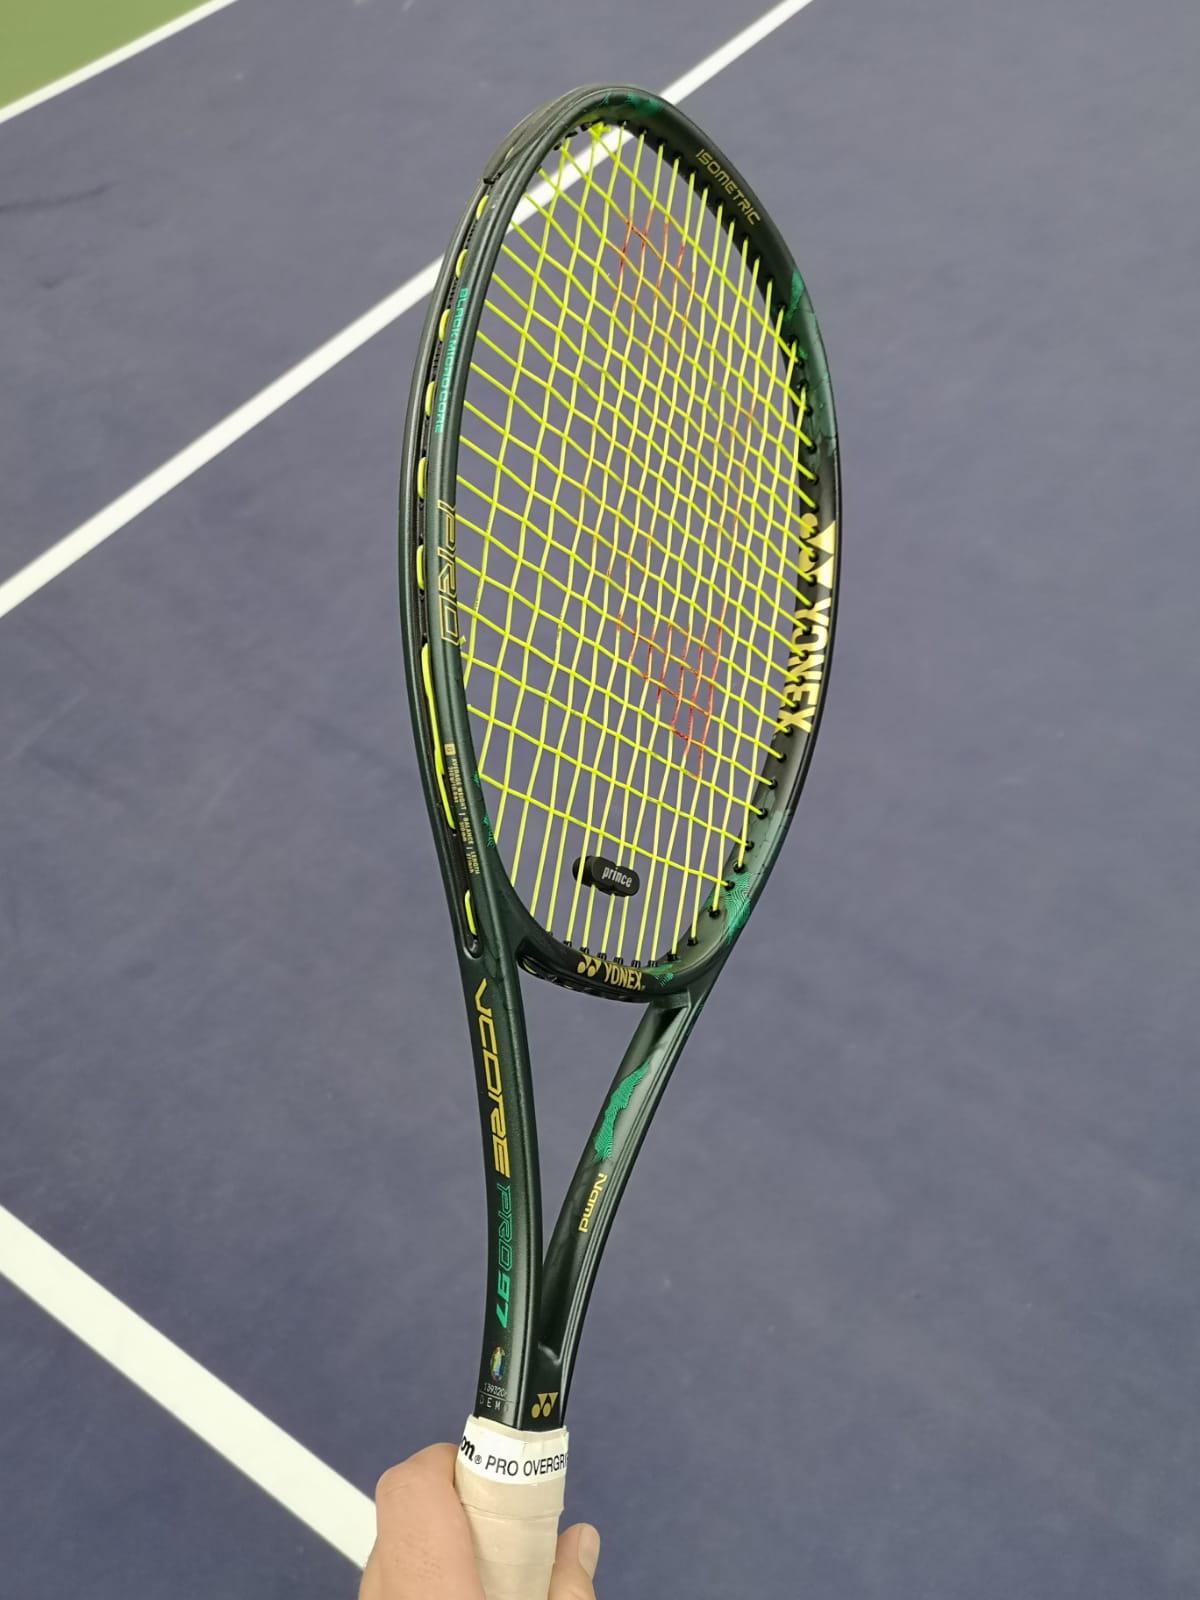 UNSTRUNG, Details about   Yonex Tennis Racquet Vcore Pro 97 310g Matte Green 2019 New G4 